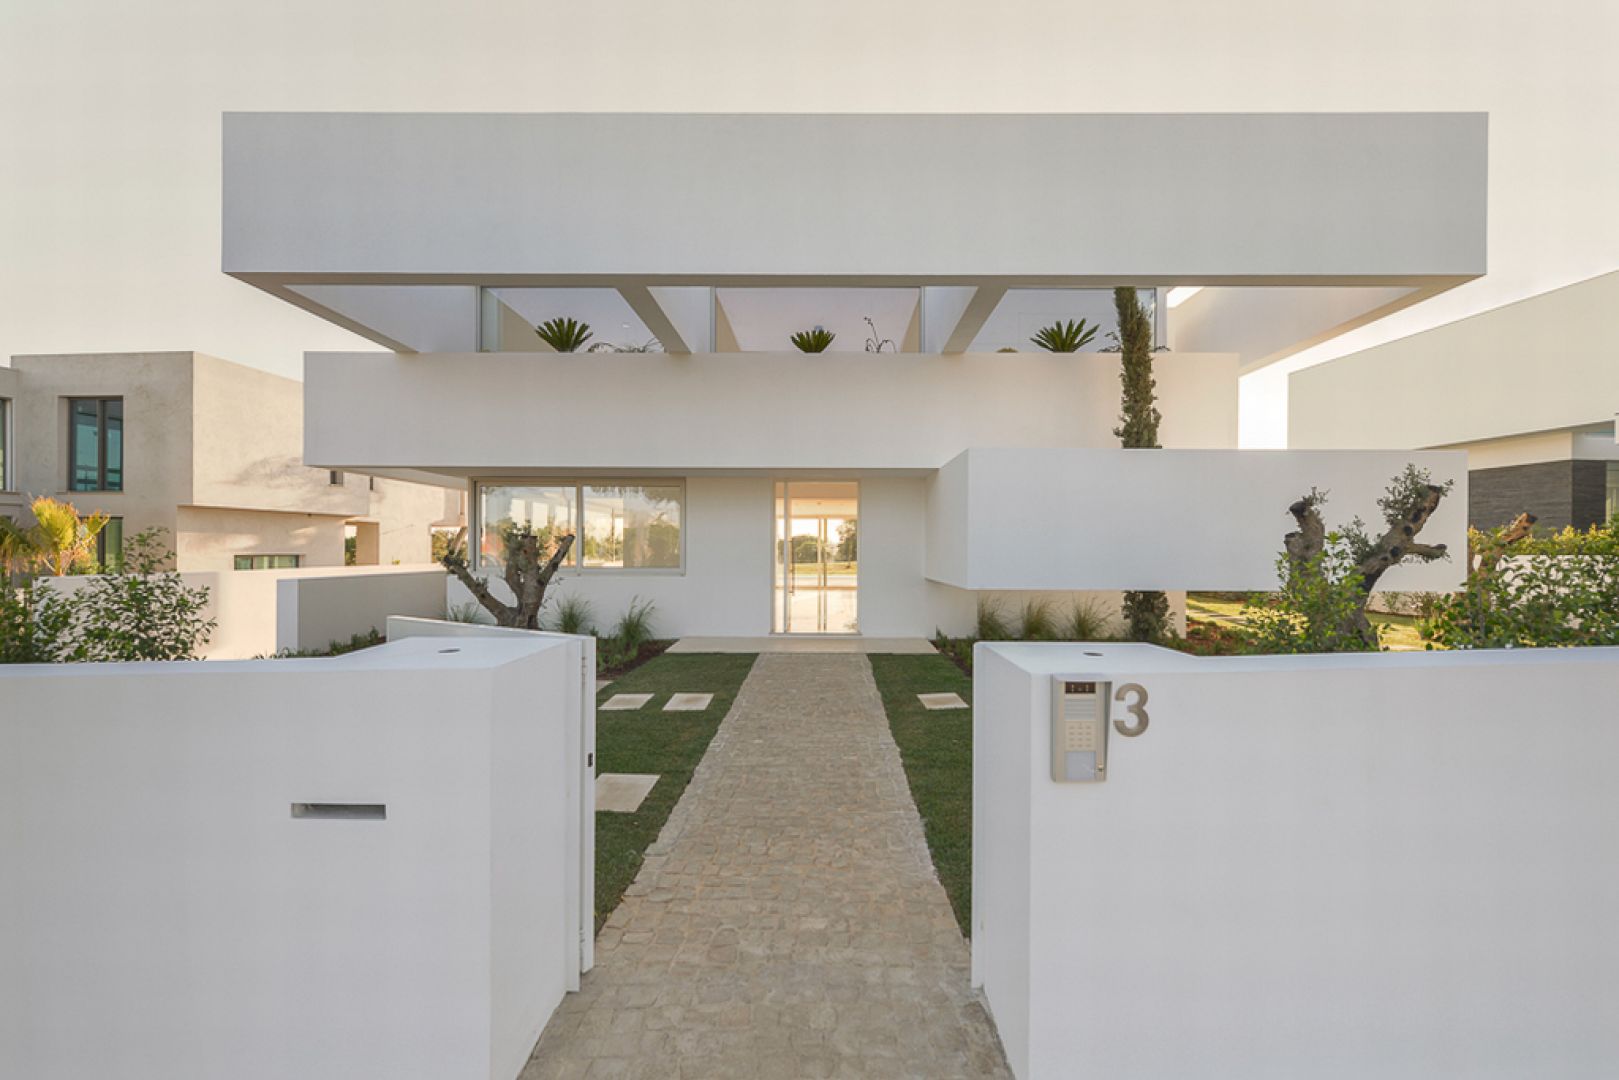 Zapraszamy do tego nietypowego, białego domu wybudowanego w Portugalii. Fot. Ricardo Oliveira Alves